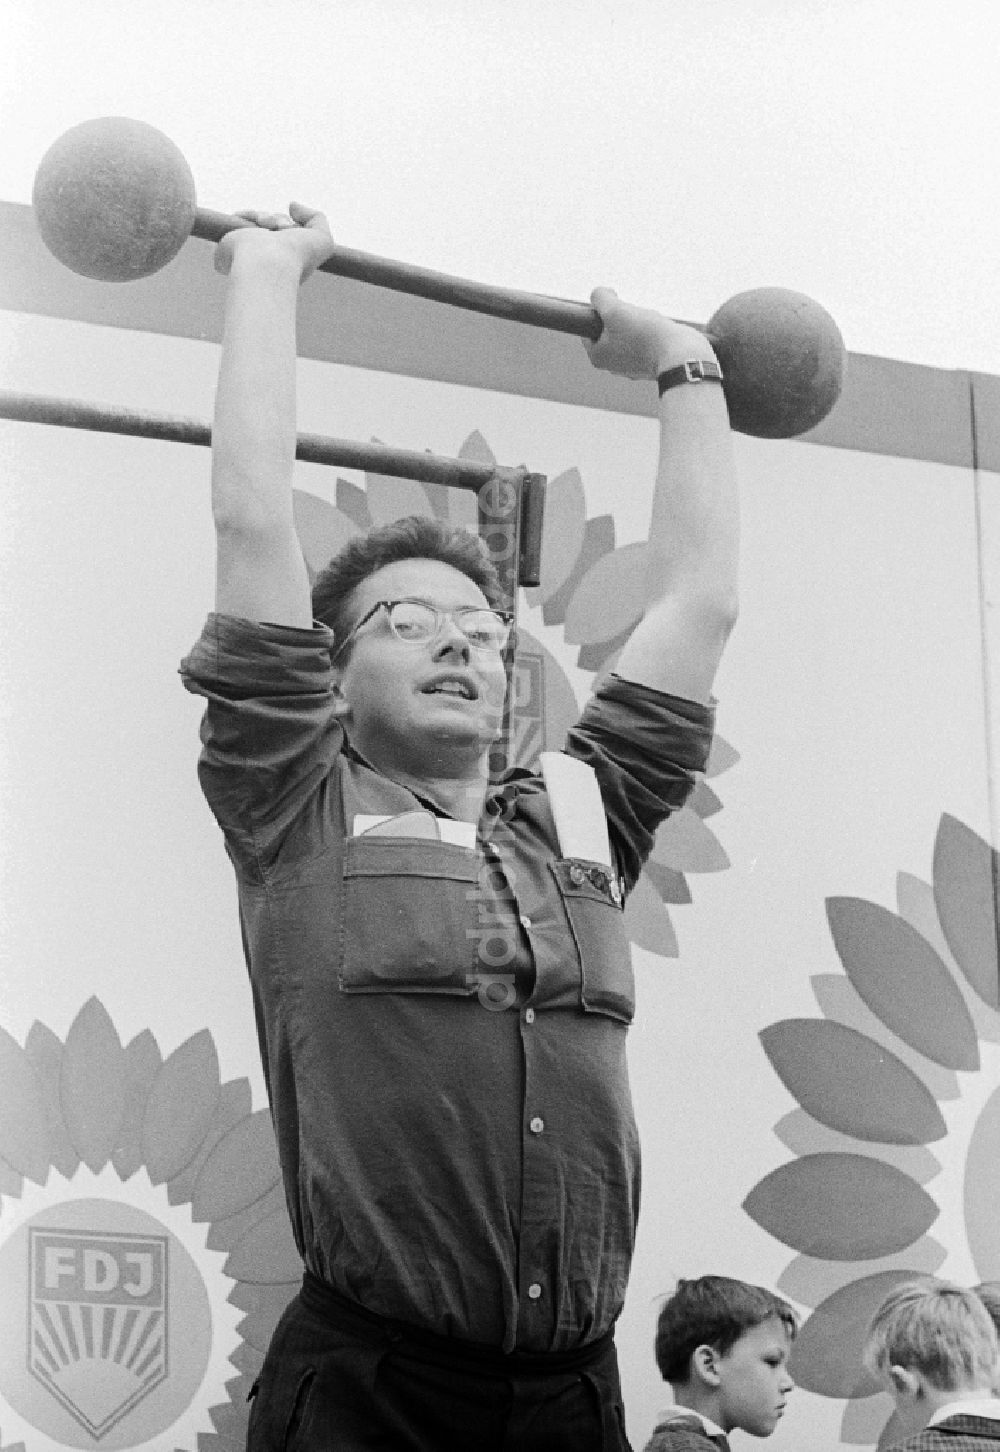 DDR-Fotoarchiv: Chemnitz - Jugendlicher beim Gewichtheben in Chemnitz in Sachsen in der DDR